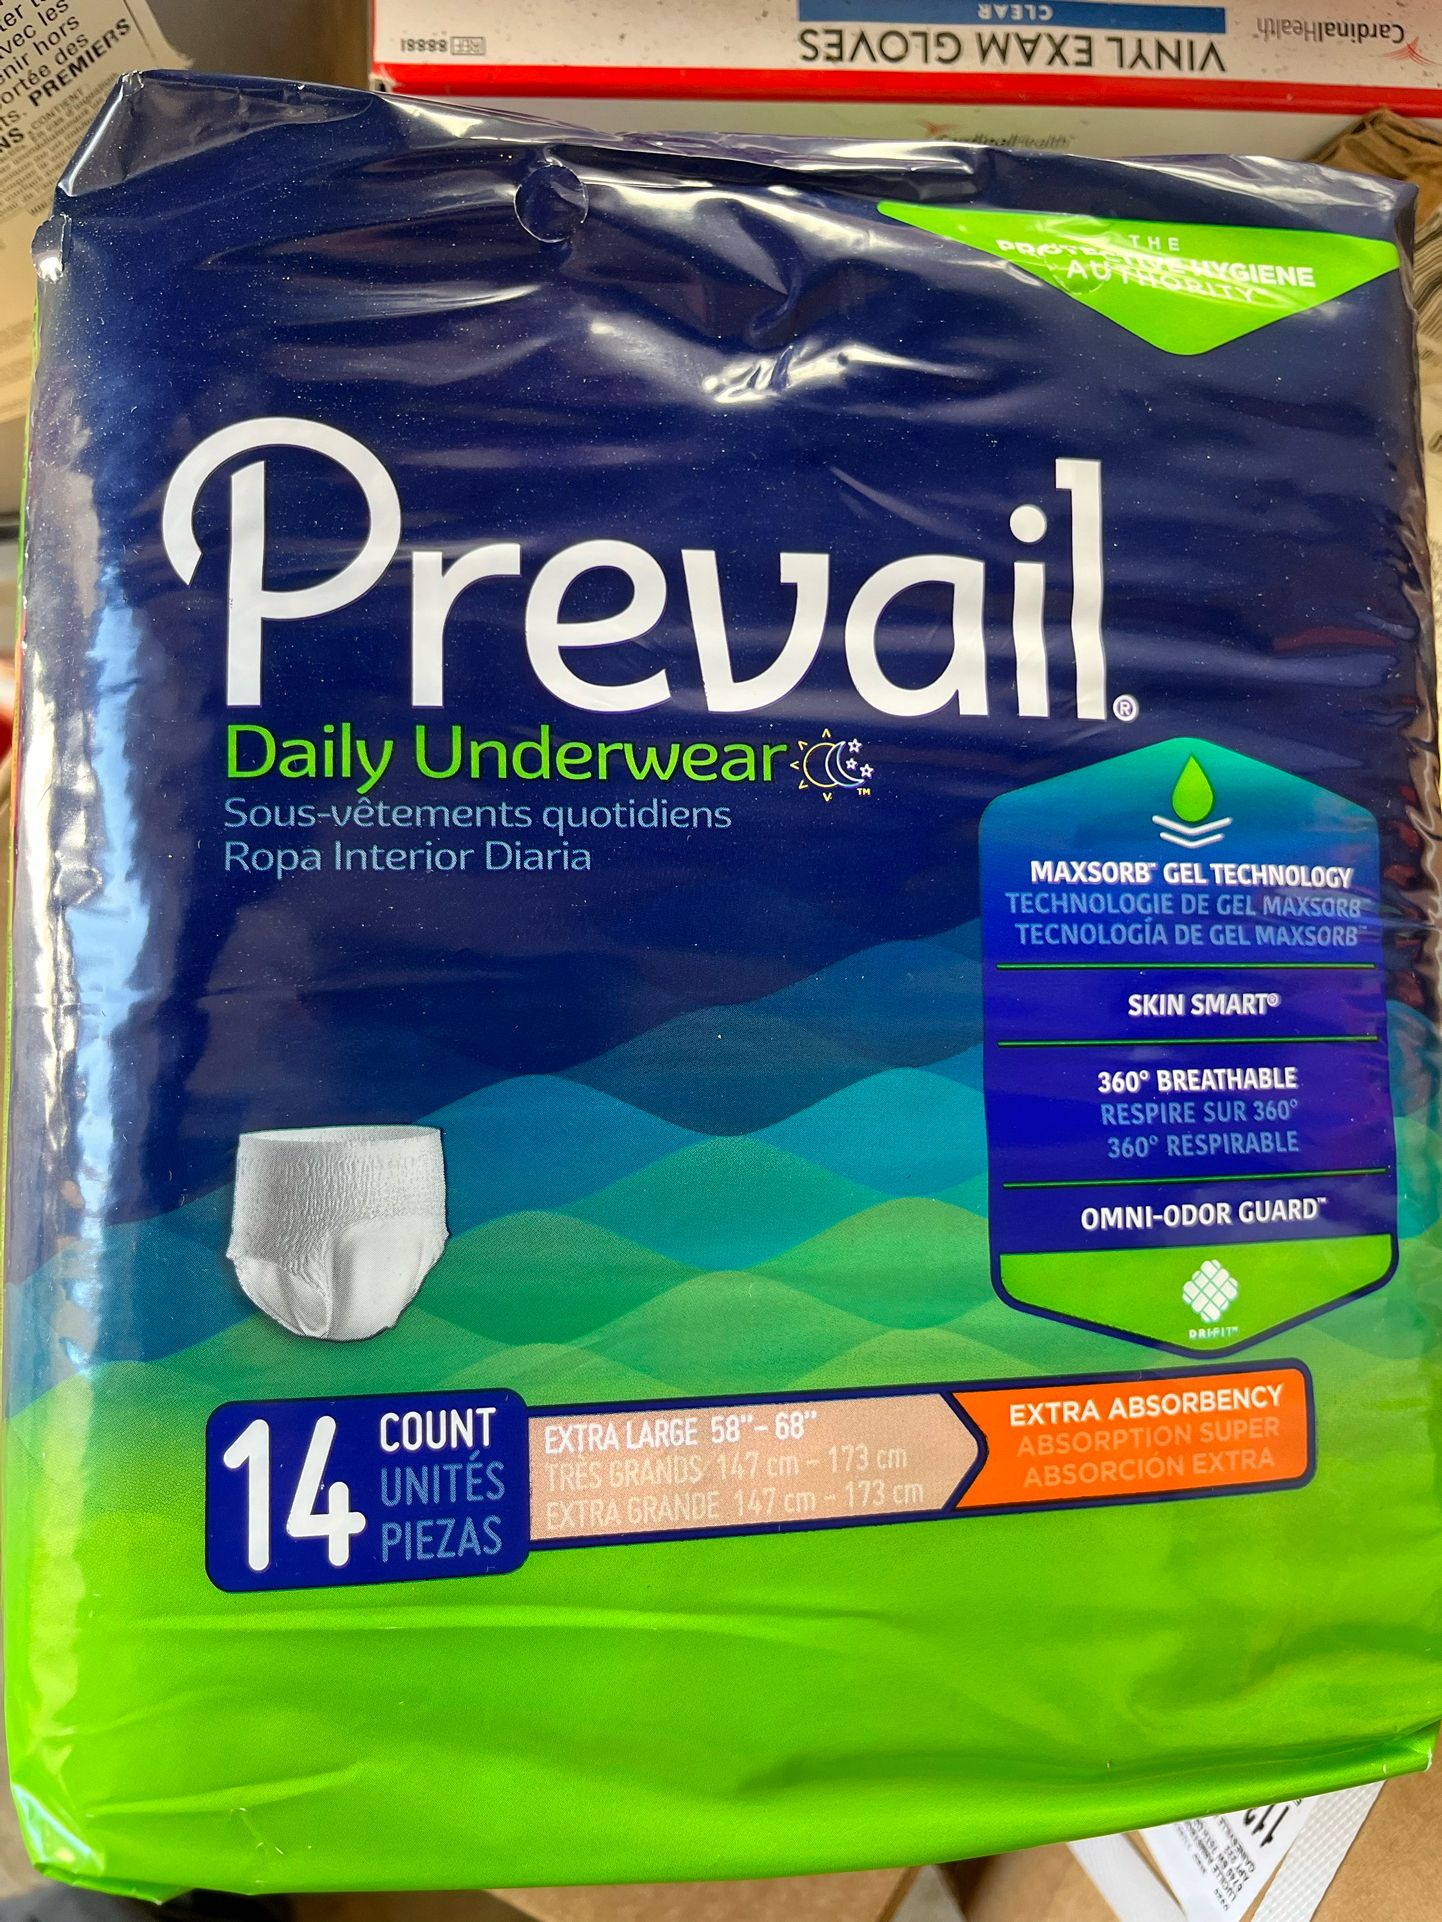 Pre Vail Daily Underwear